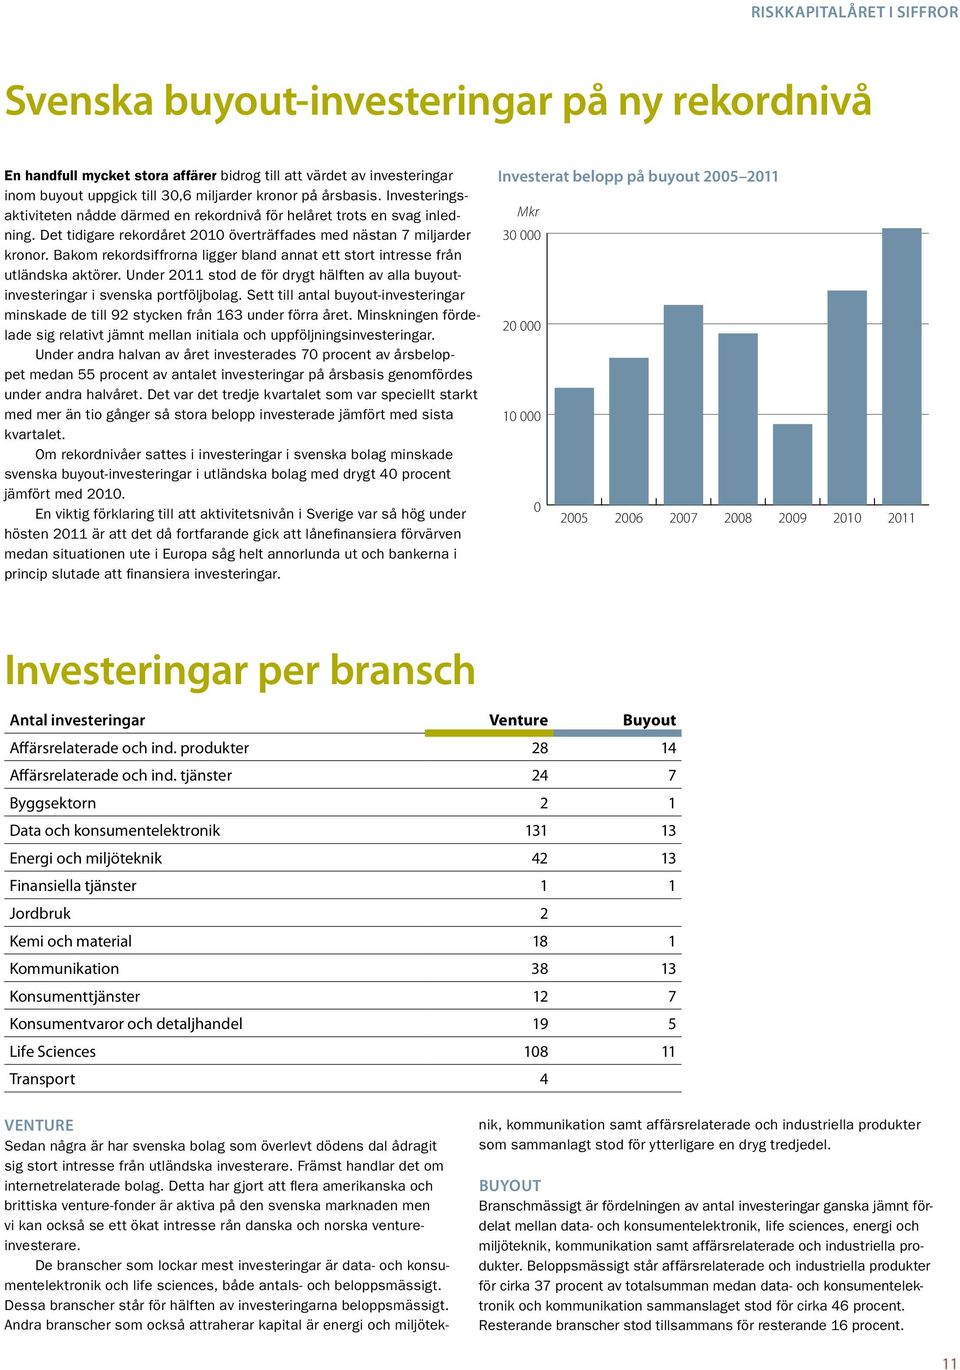 Bakom rekordsiffrorna ligger bland annat ett stort intresse från utländska aktörer. Under 2011 stod de för drygt hälften av alla buyoutinvesteringar i svenska portföljbolag.